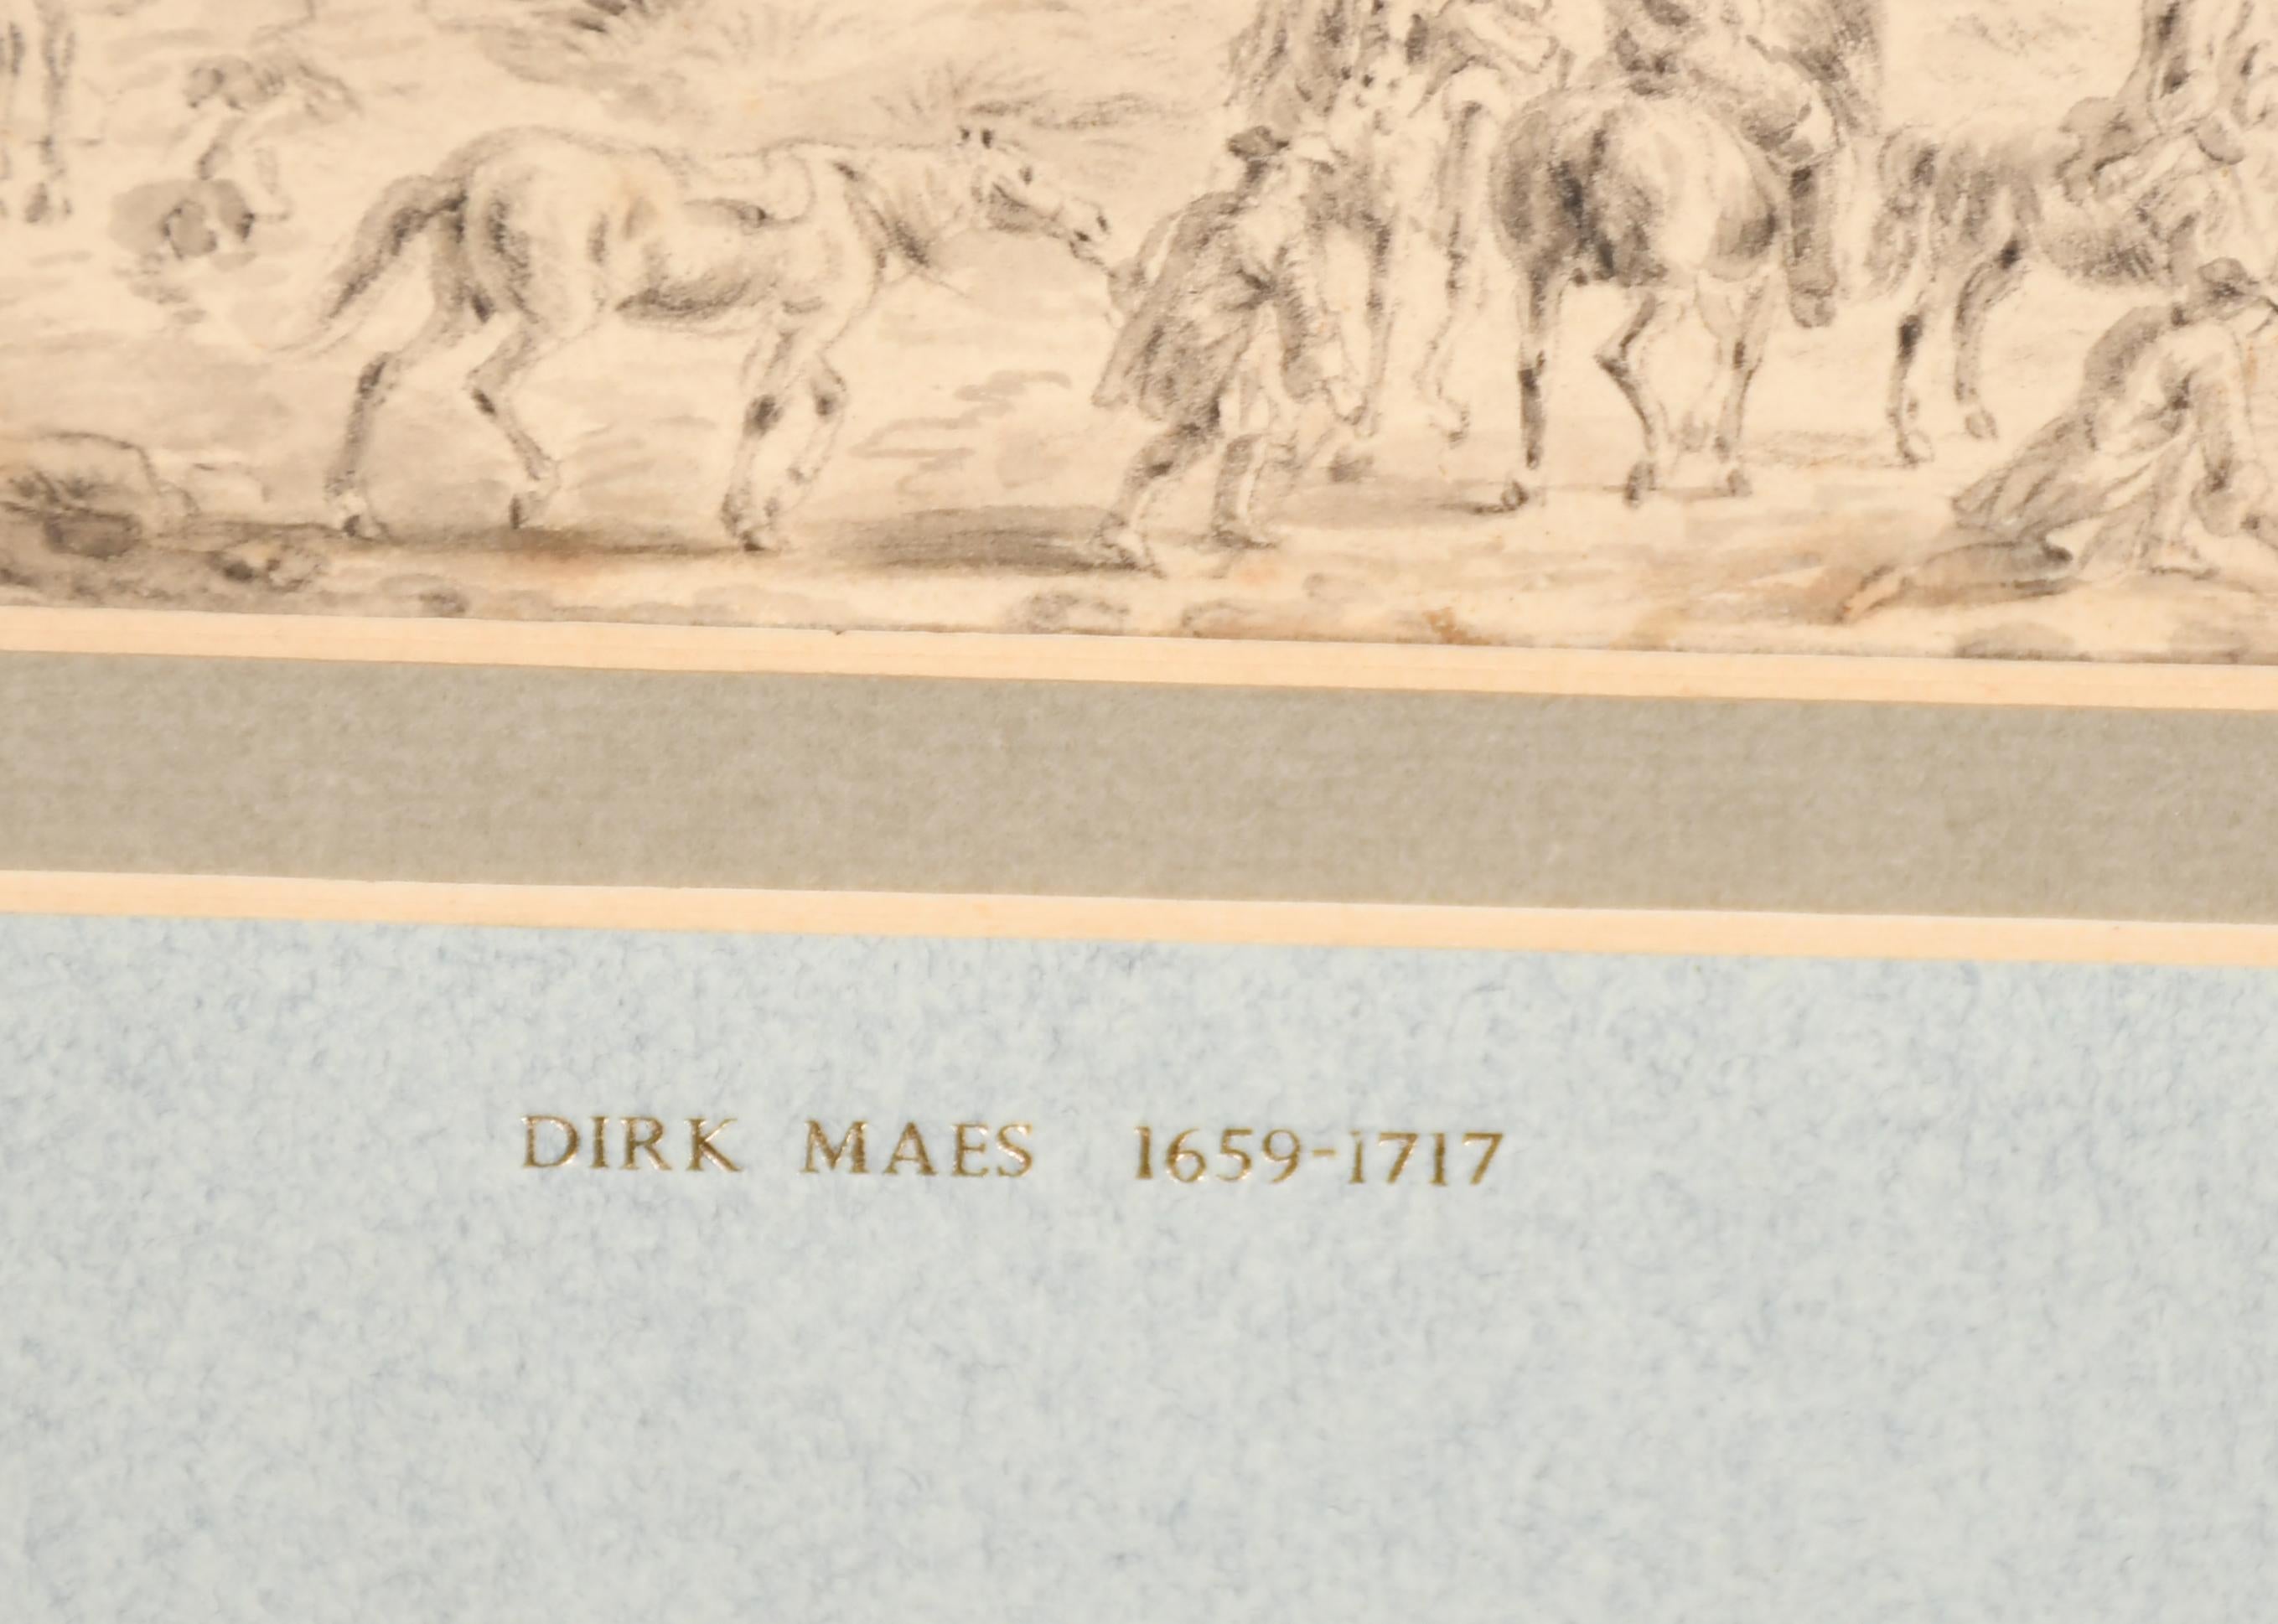 La partie de chasse
Attribué à Dirk Maes (1659-1717) Néerlandais. 
Figures dans un paysage classique, 
Aquarelle et lavis sur papier, 
Image montée, non encadrée 17,1 x 24,7 cm (6,75 x 9,75)
état : globalement bon pour l'âge, quelques décolorations